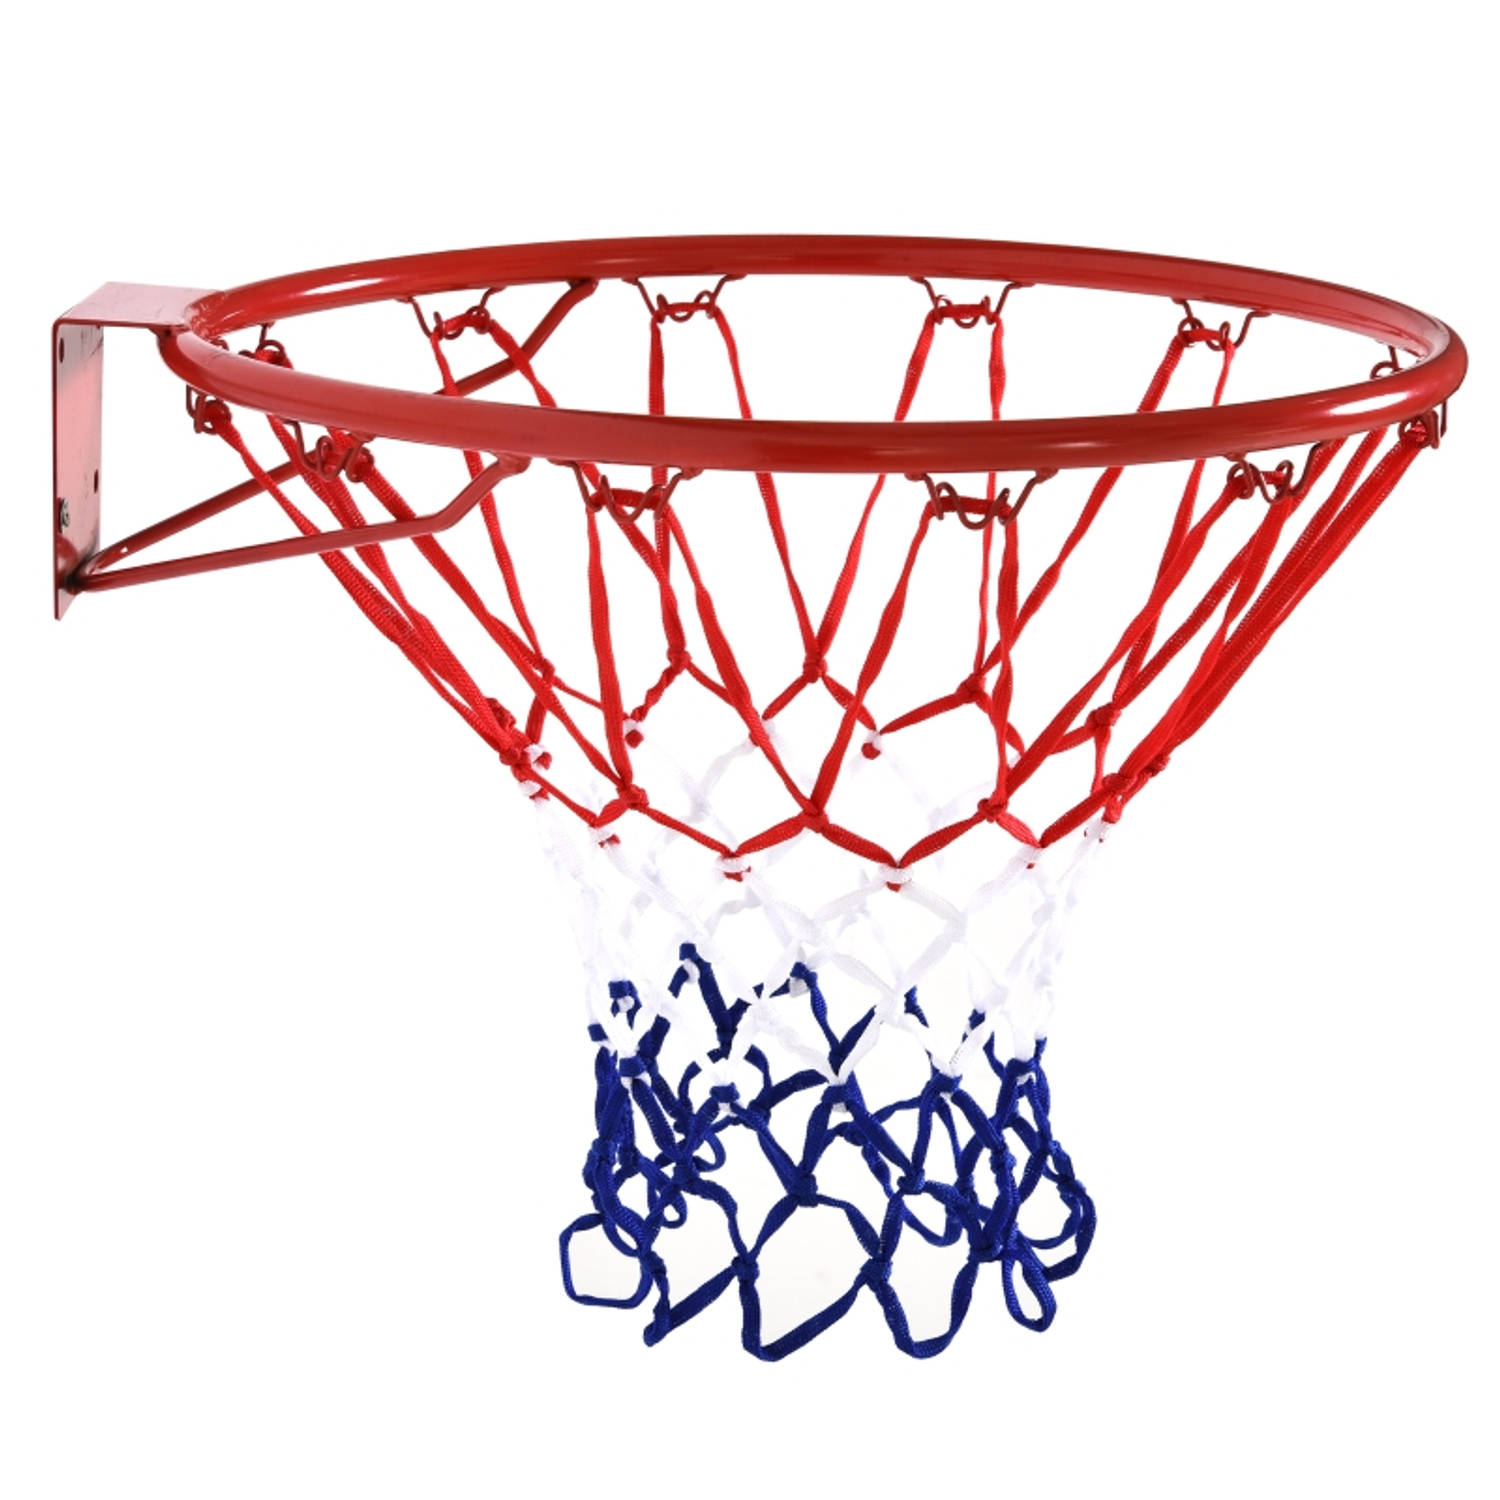 Basketbalring Basketball Basketbal ring Basketbalnet Basketballen Rood-blauw-wit Doorsnede 46 cm